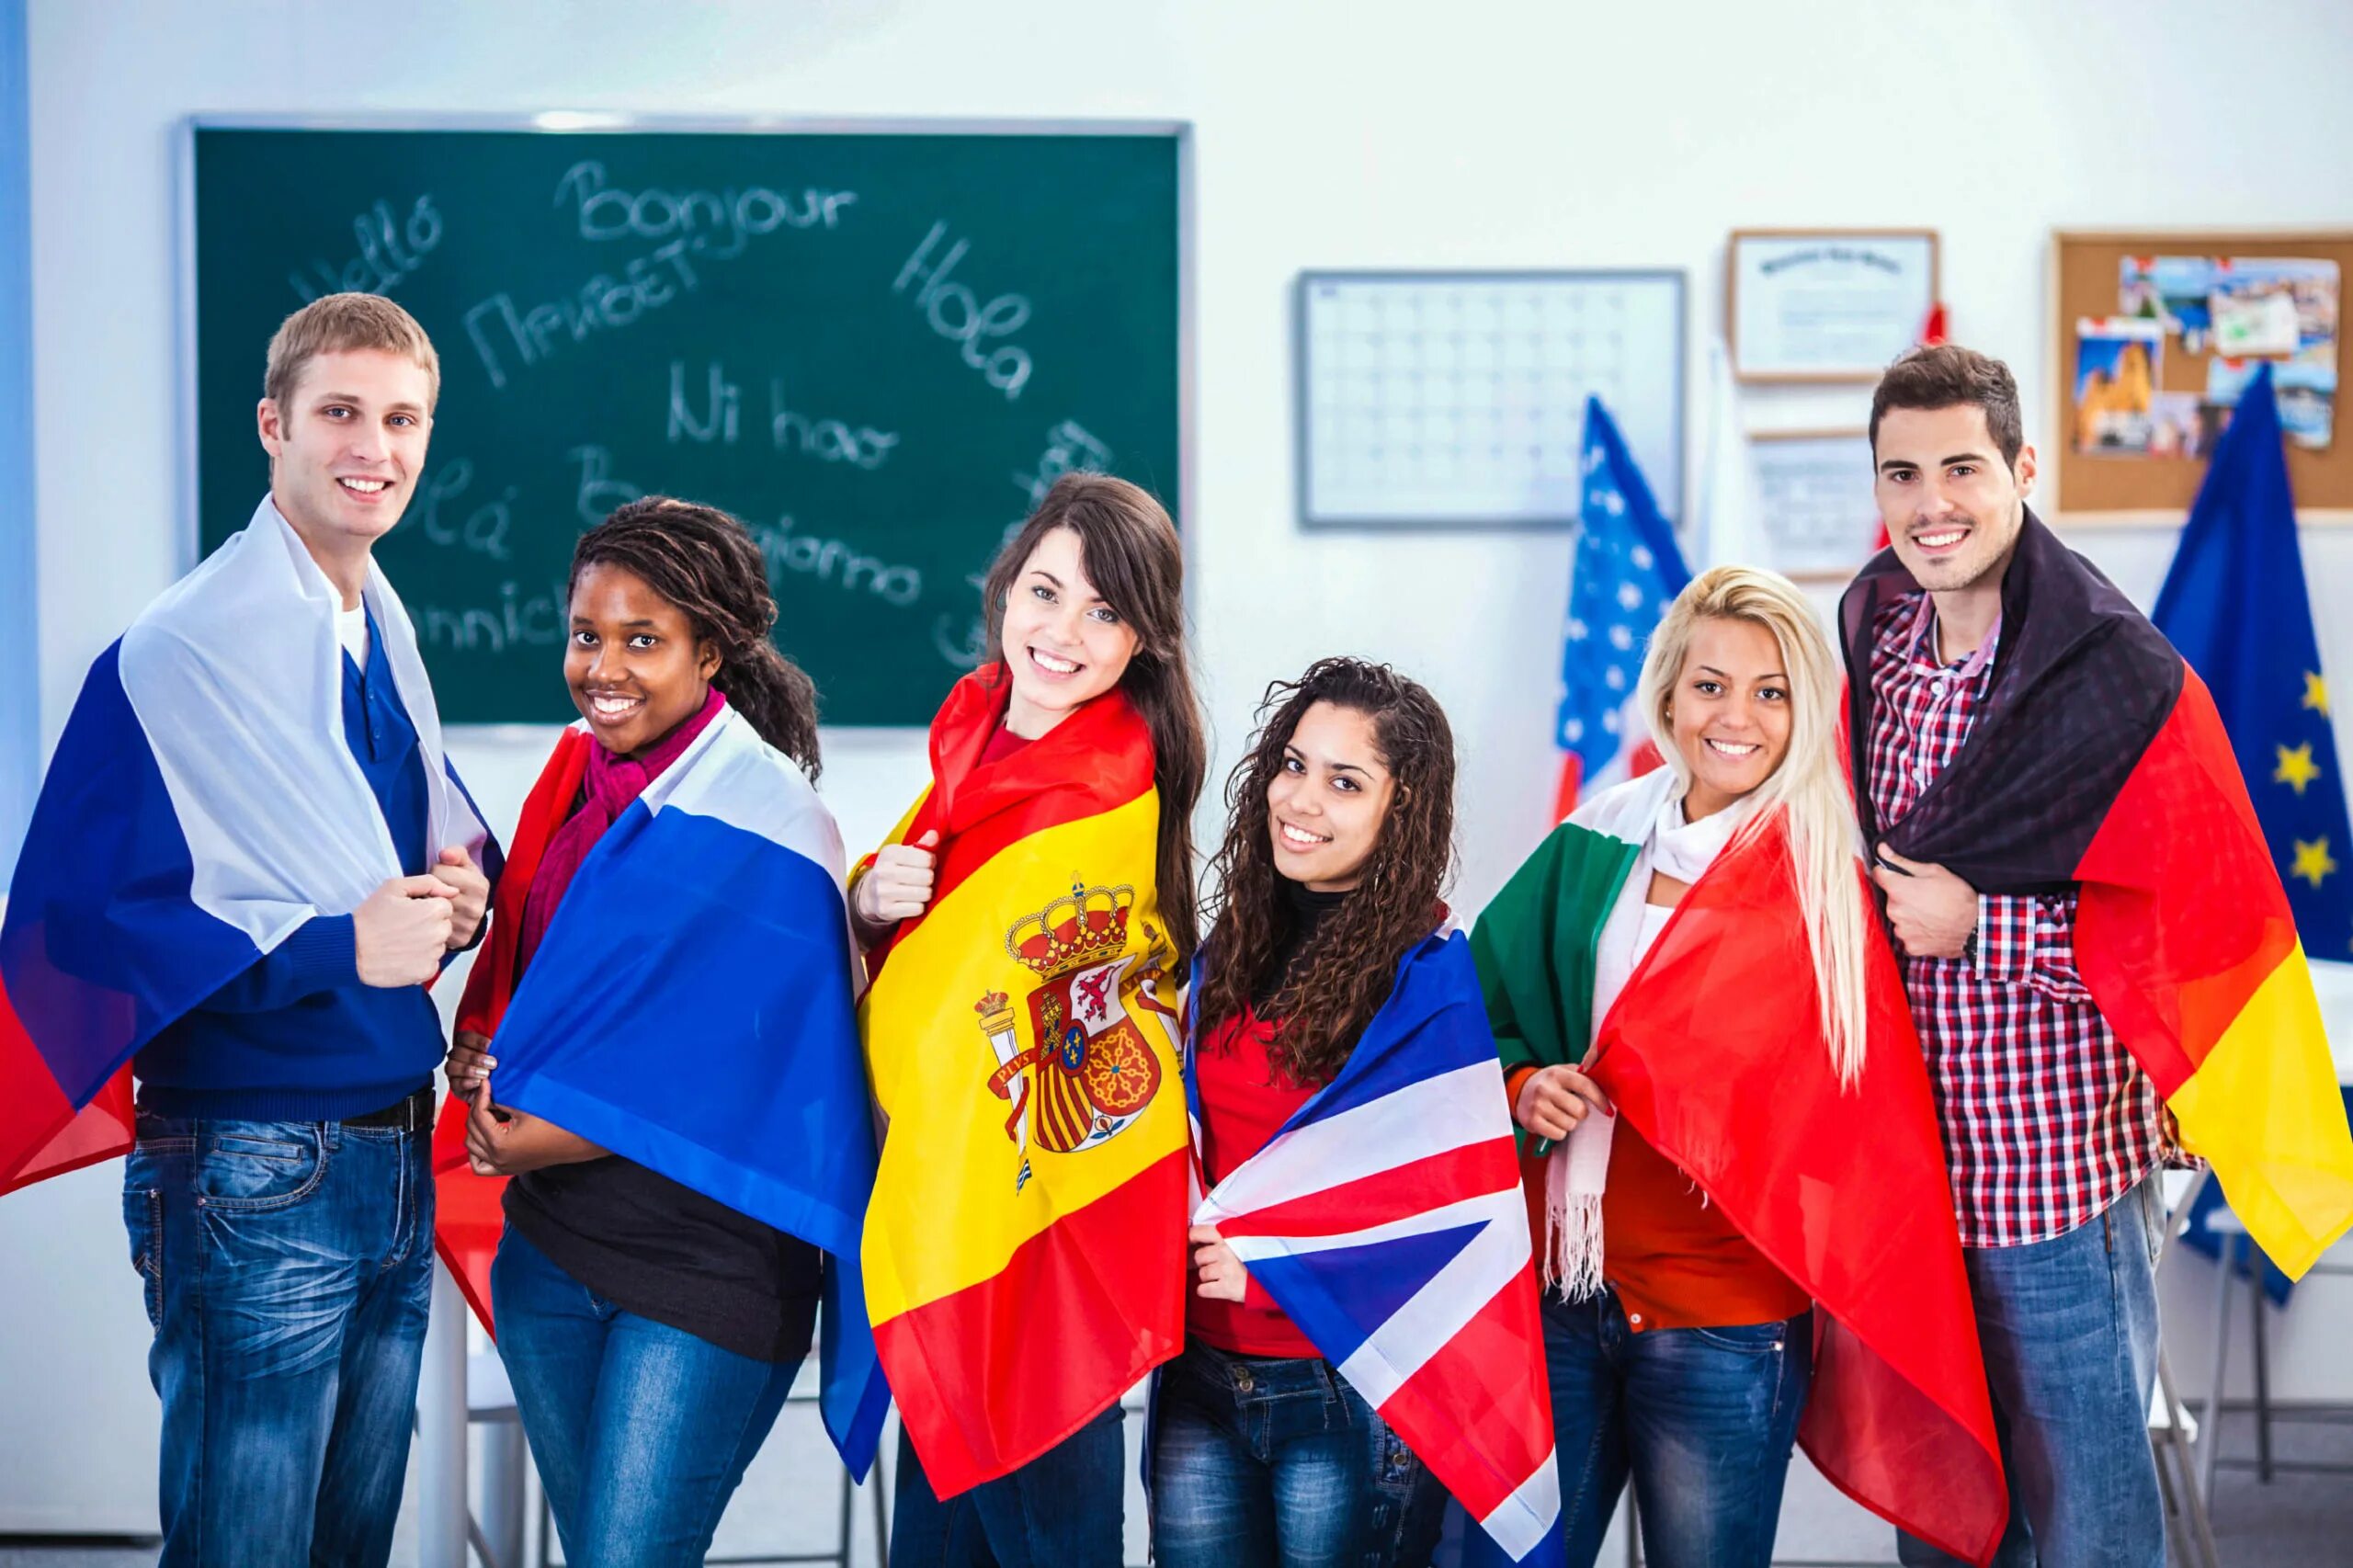 Иностранный россия. Студенты иностранцы. Российские студенты за рубежом. Иностранные студенты с флагами. Образование харубежом.